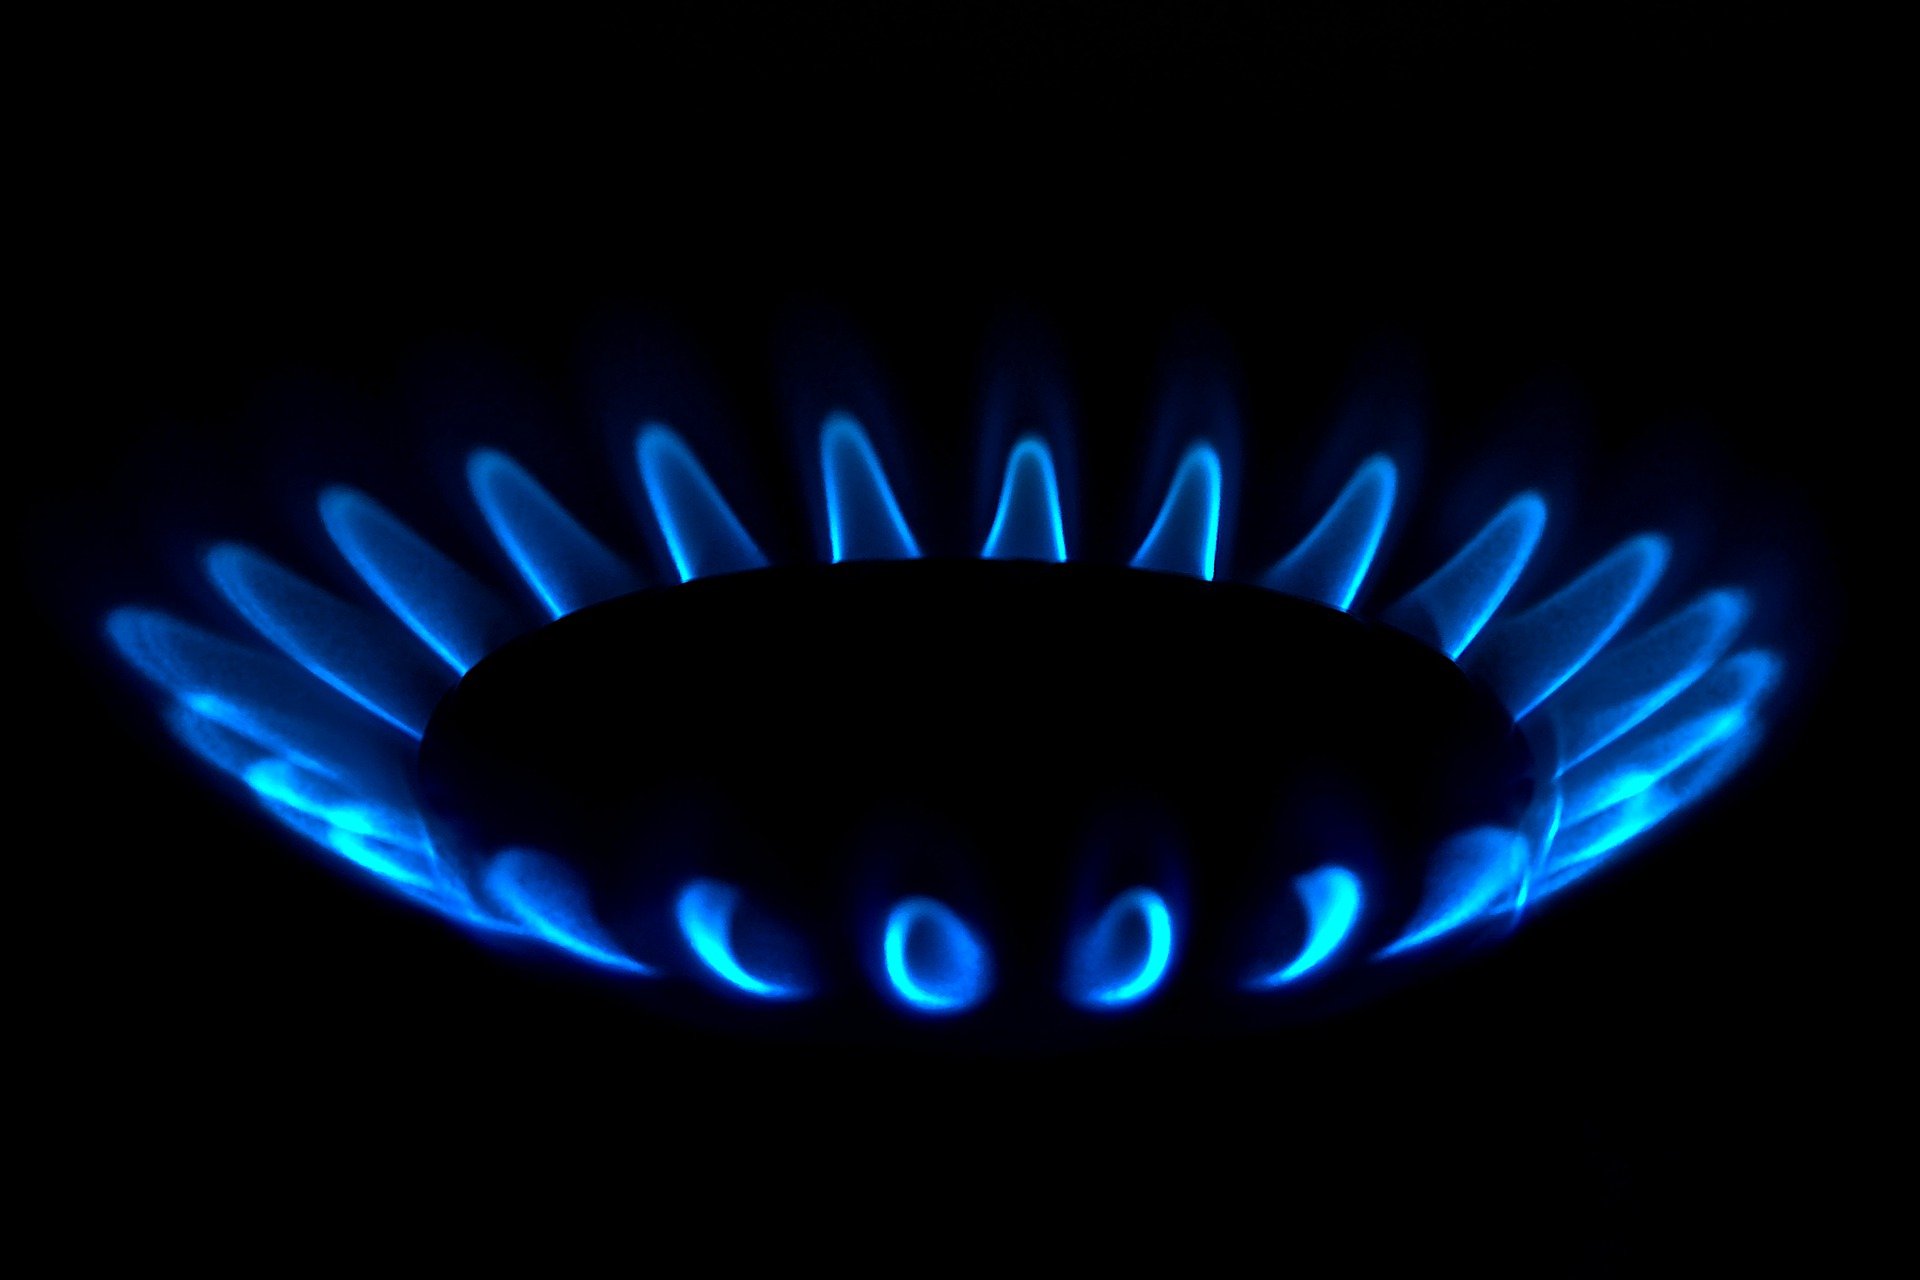 Путин: Расчёты за газ для недружественных стран нужно перевести в рубли до конца марта